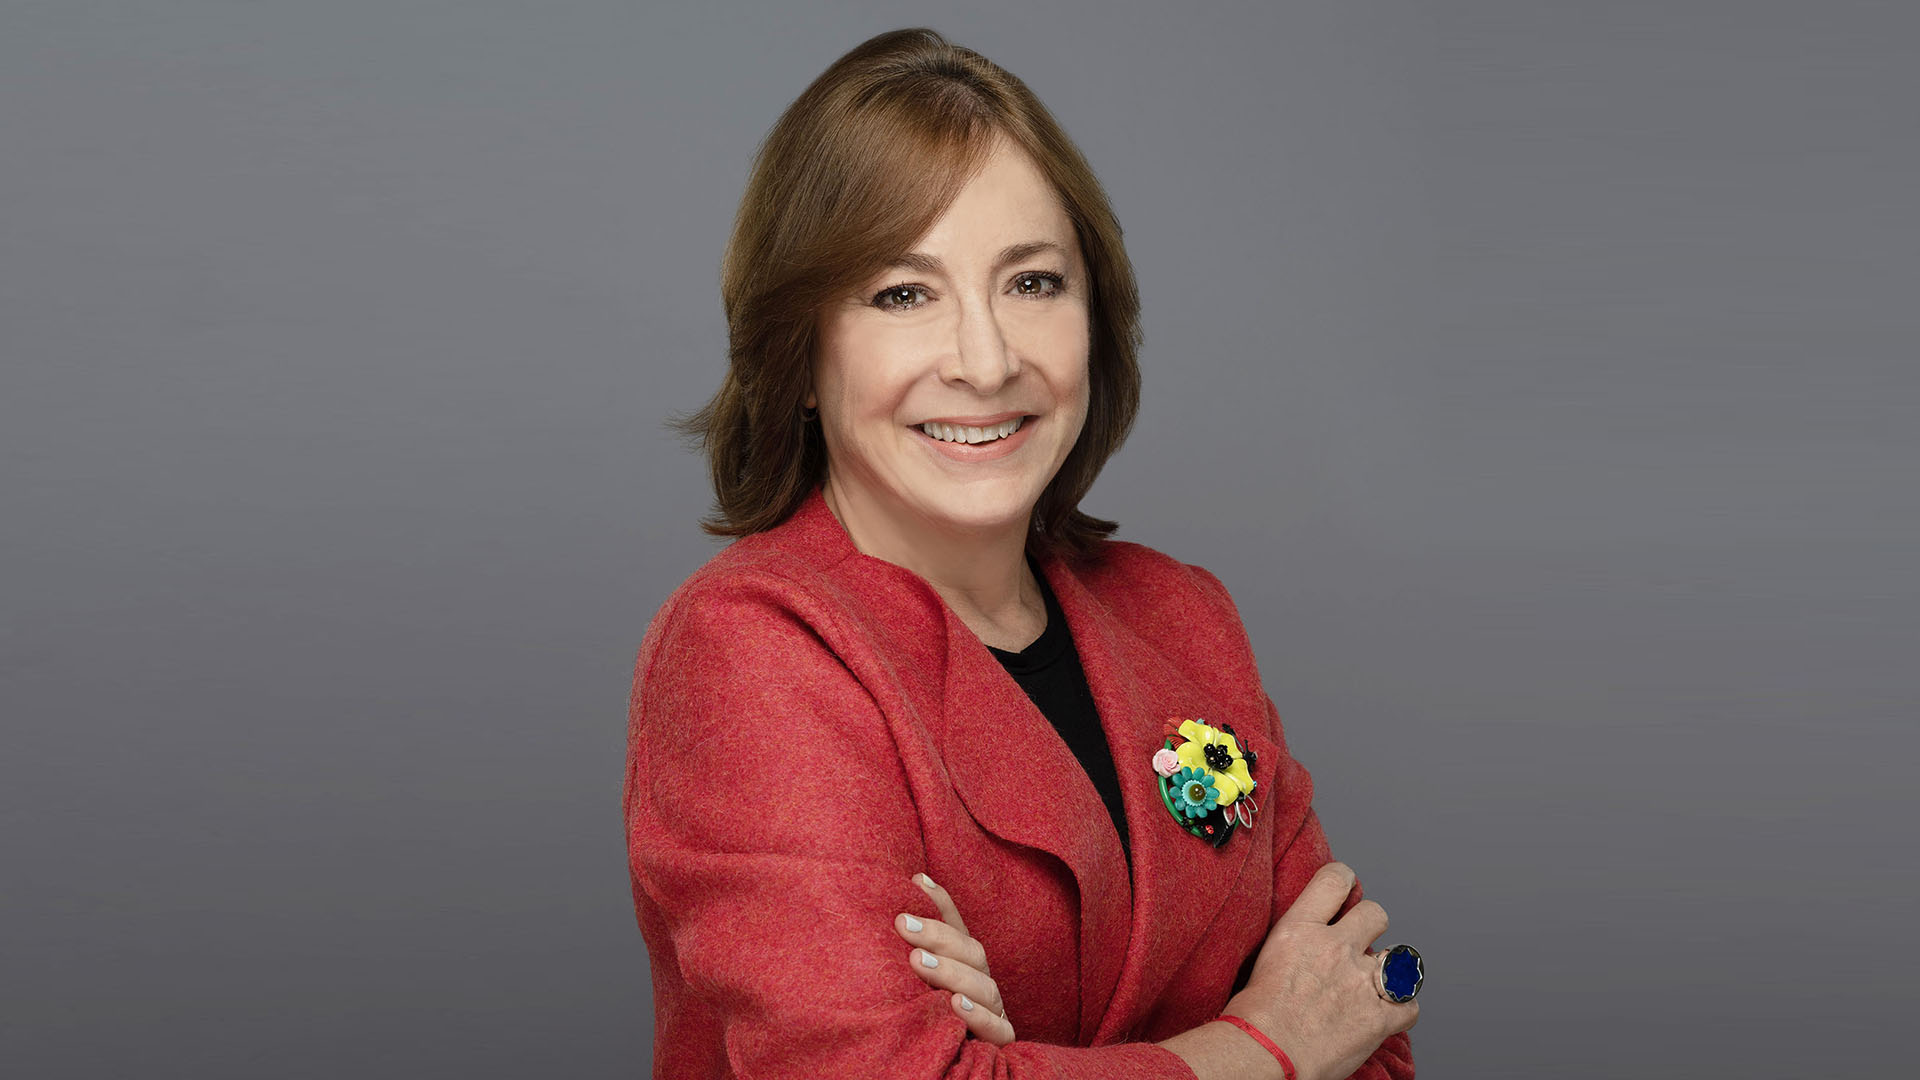 Paula Santilli, CEO de PepsiCo Latinoamérica